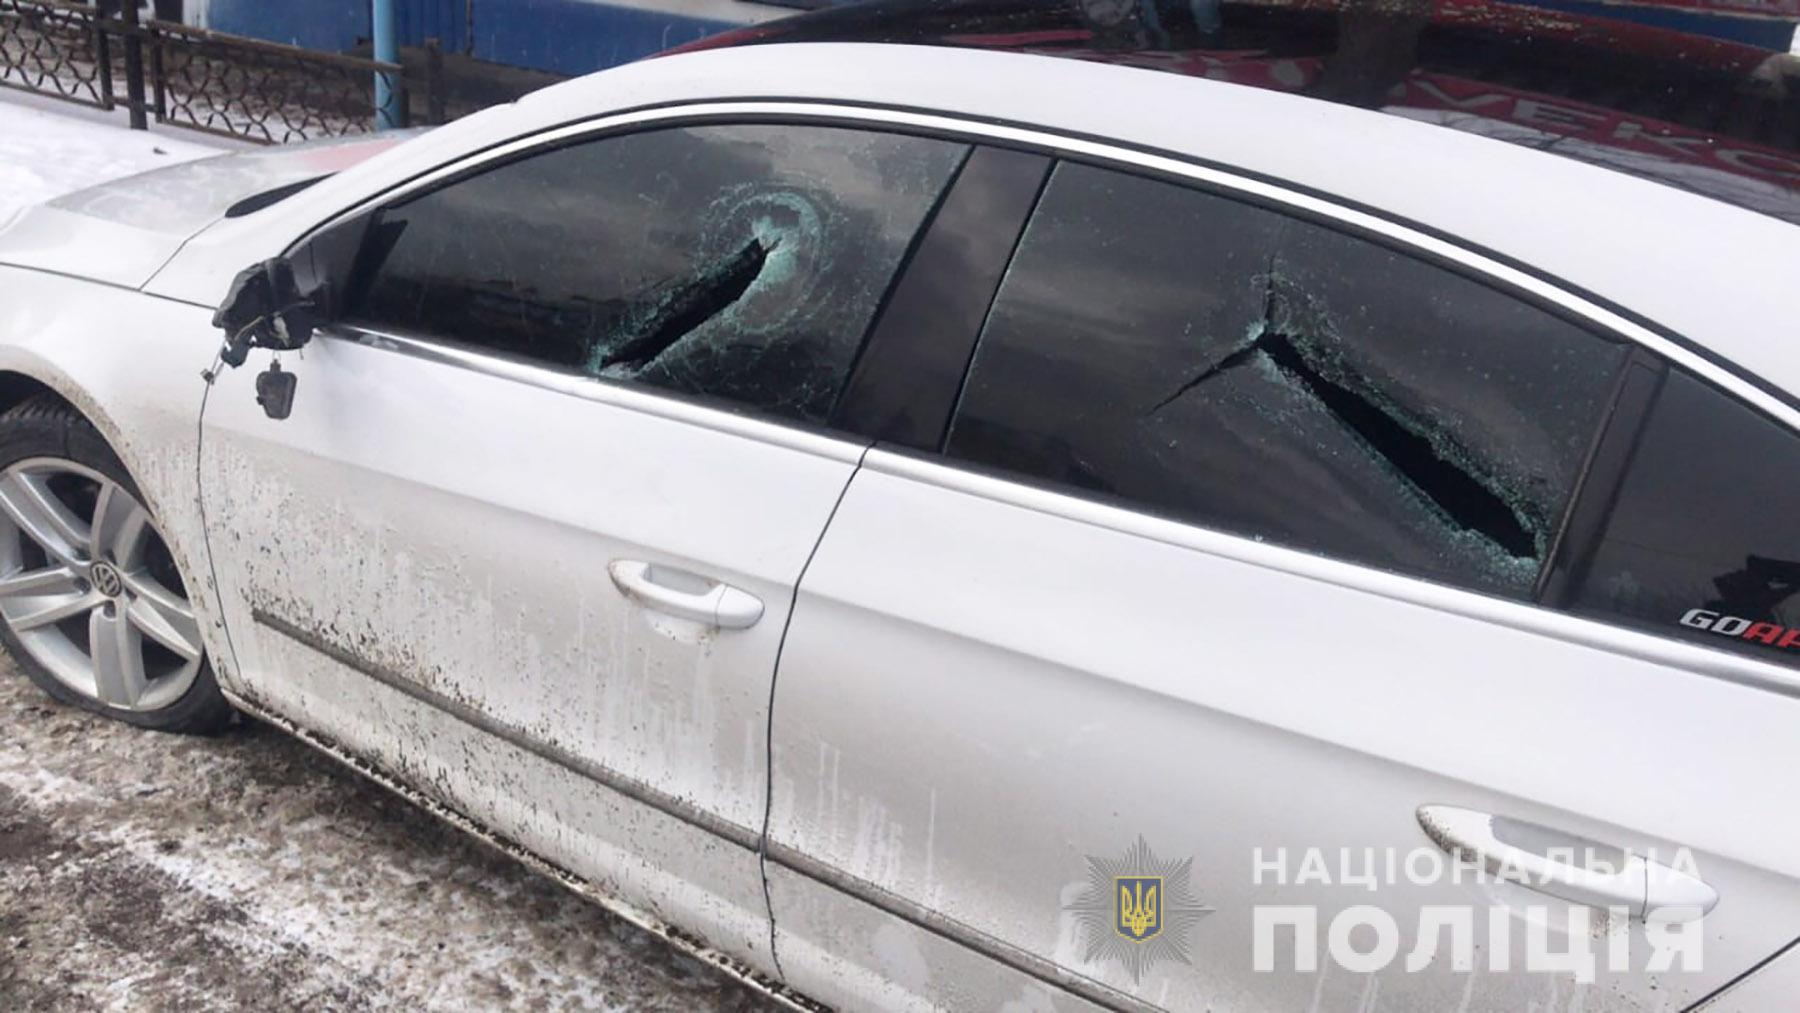 Избили дубинками и разбили машину: подробности нападения в Шевченковском районе Запорожья (ФОТО)